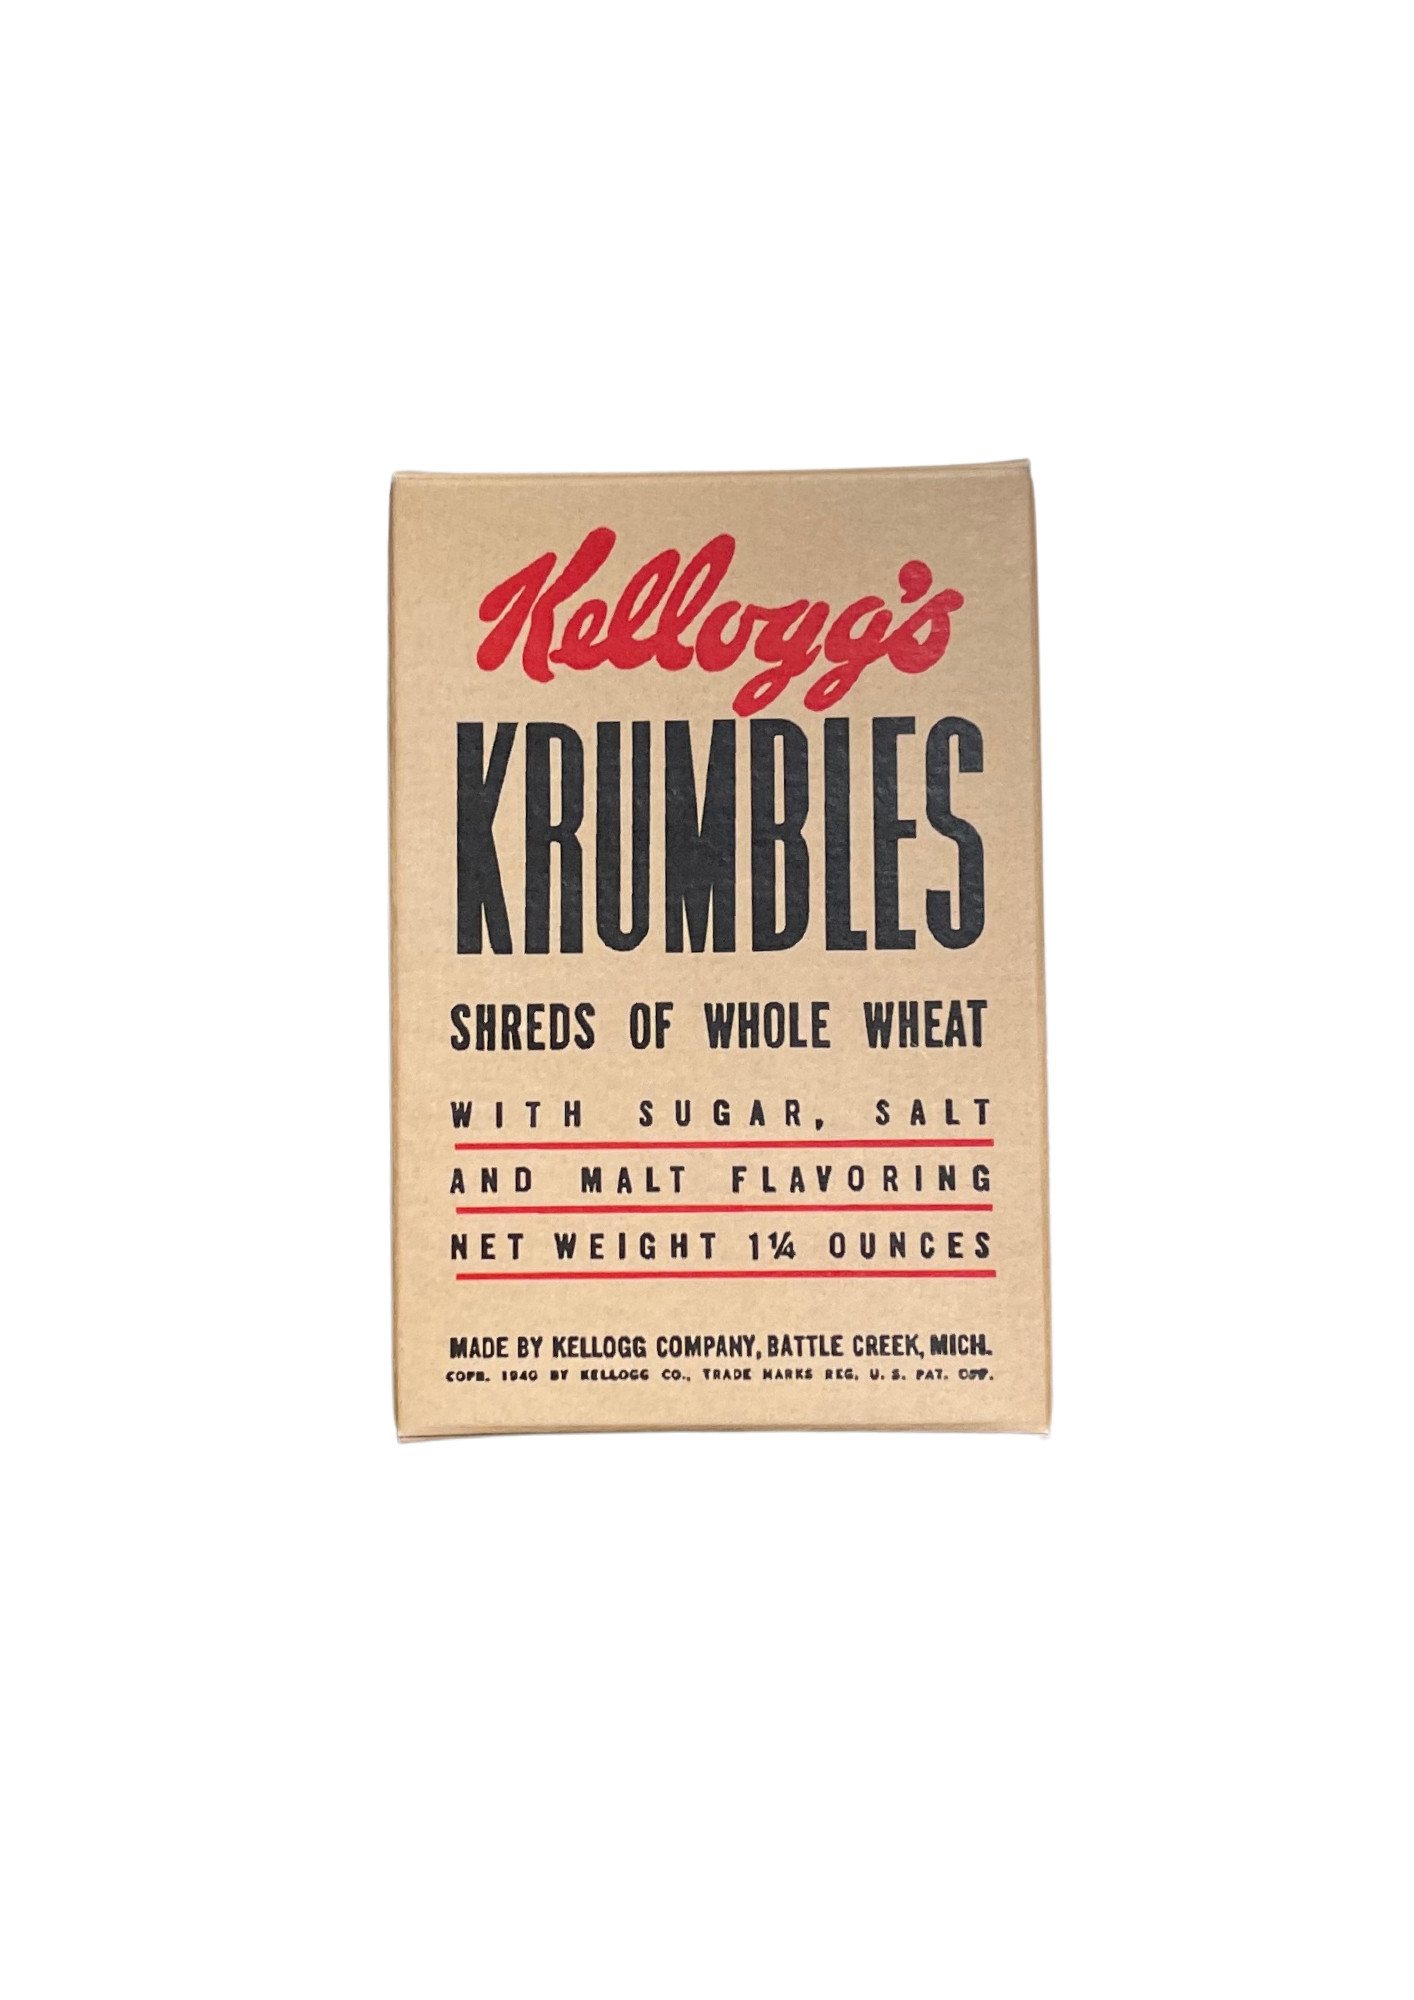 Kellogg’s Krumbles